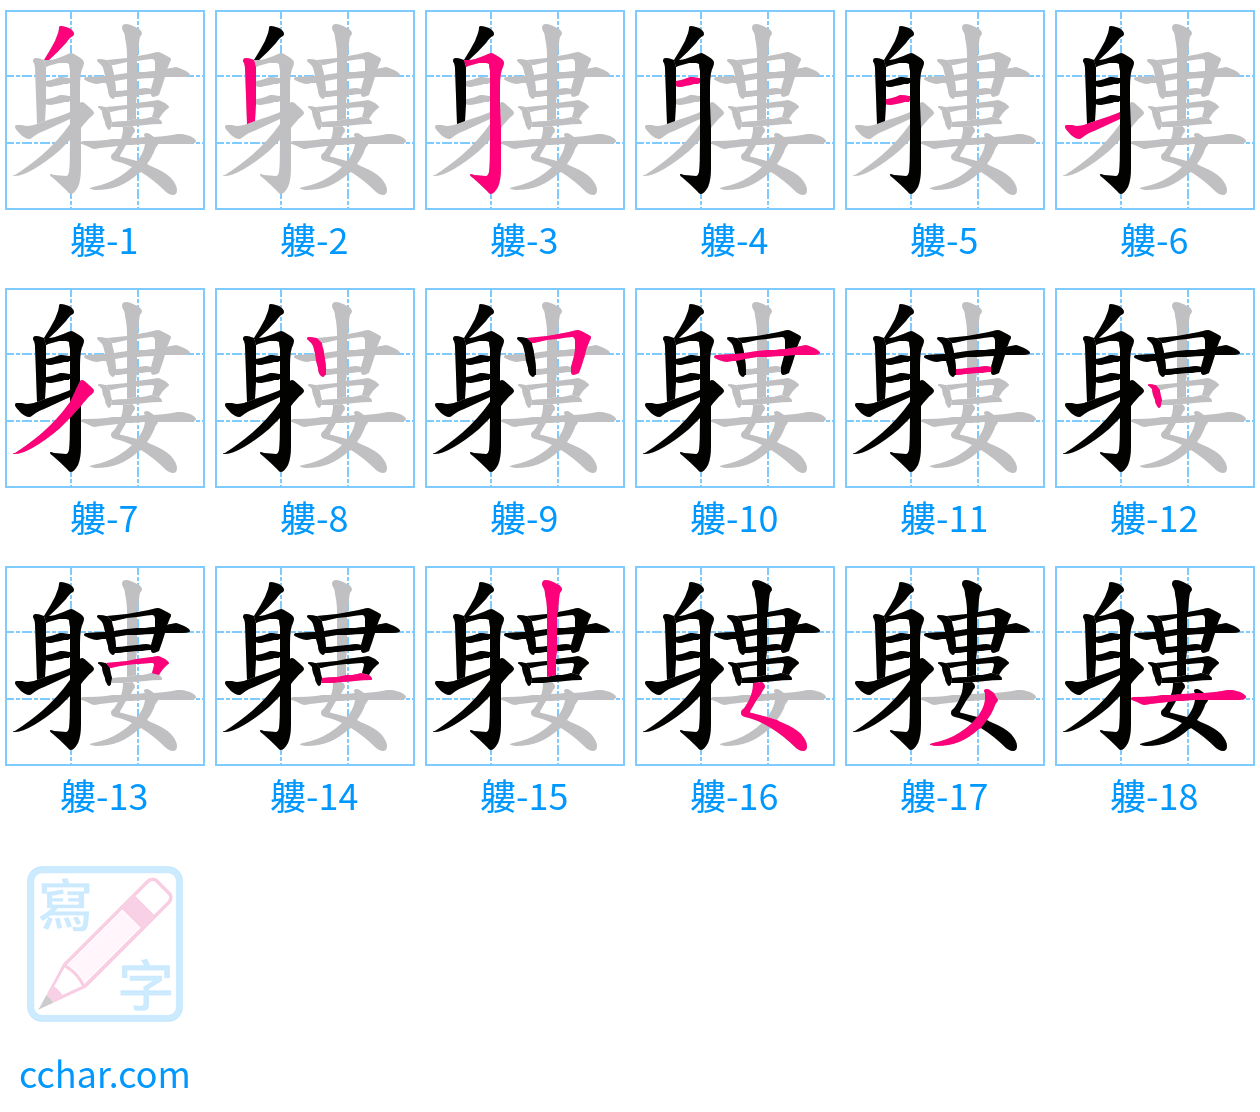 軁 stroke order step-by-step diagram